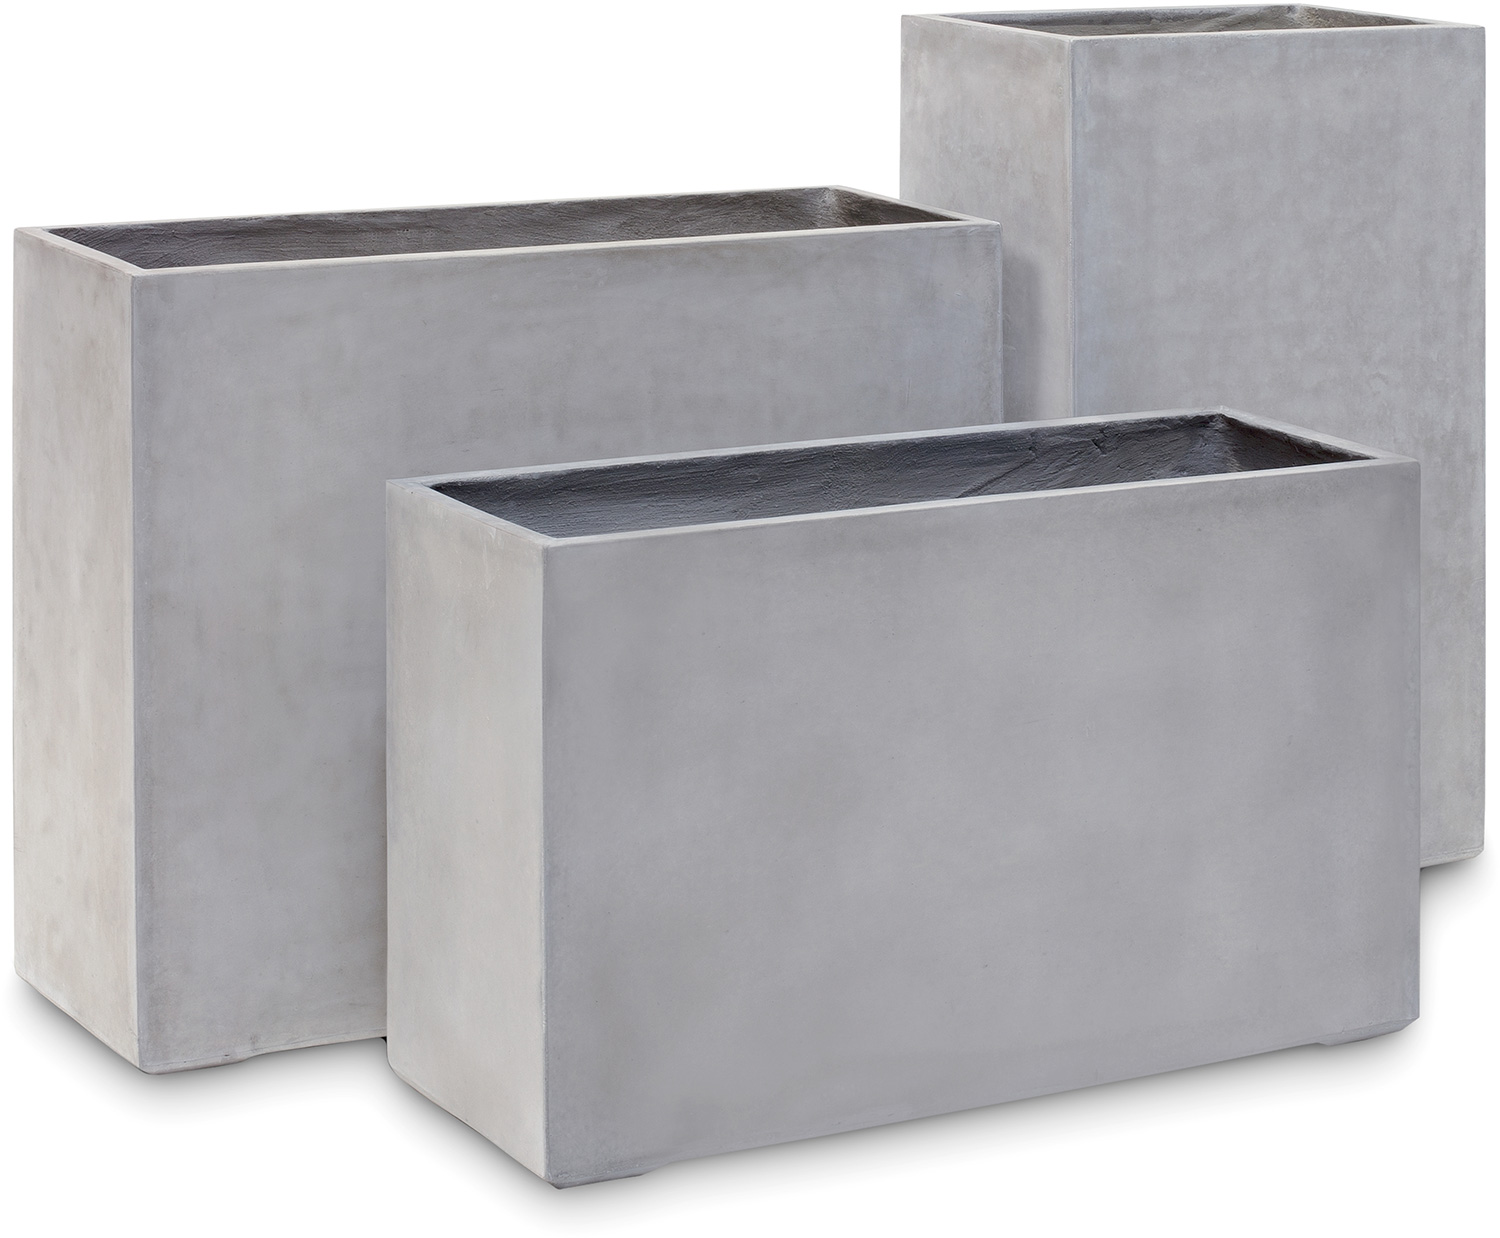 Division Plus Raumteiler, 100x35/60 cm, natur-beton L: 100 B: 35 H: 60 | natur-beton